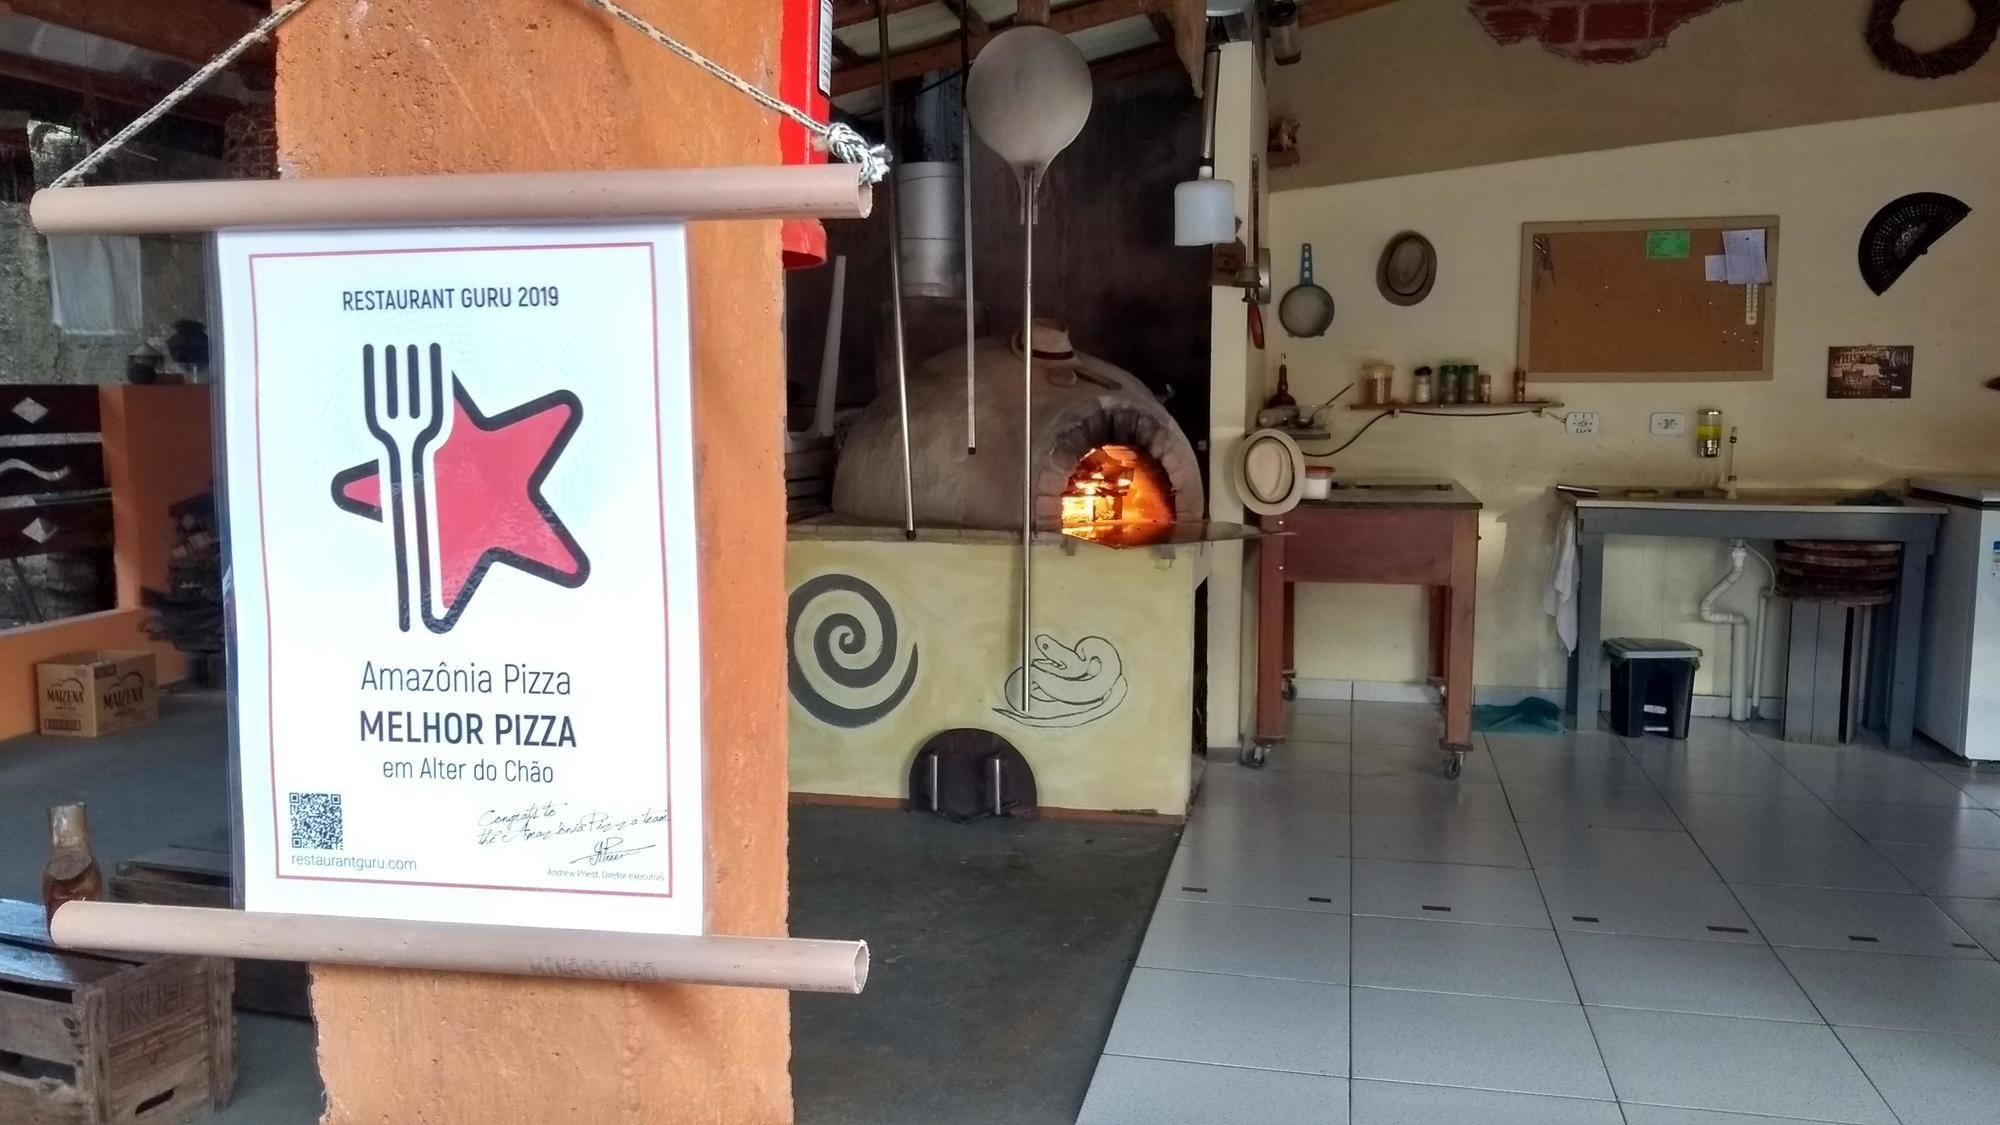 Amazônia Pizza award